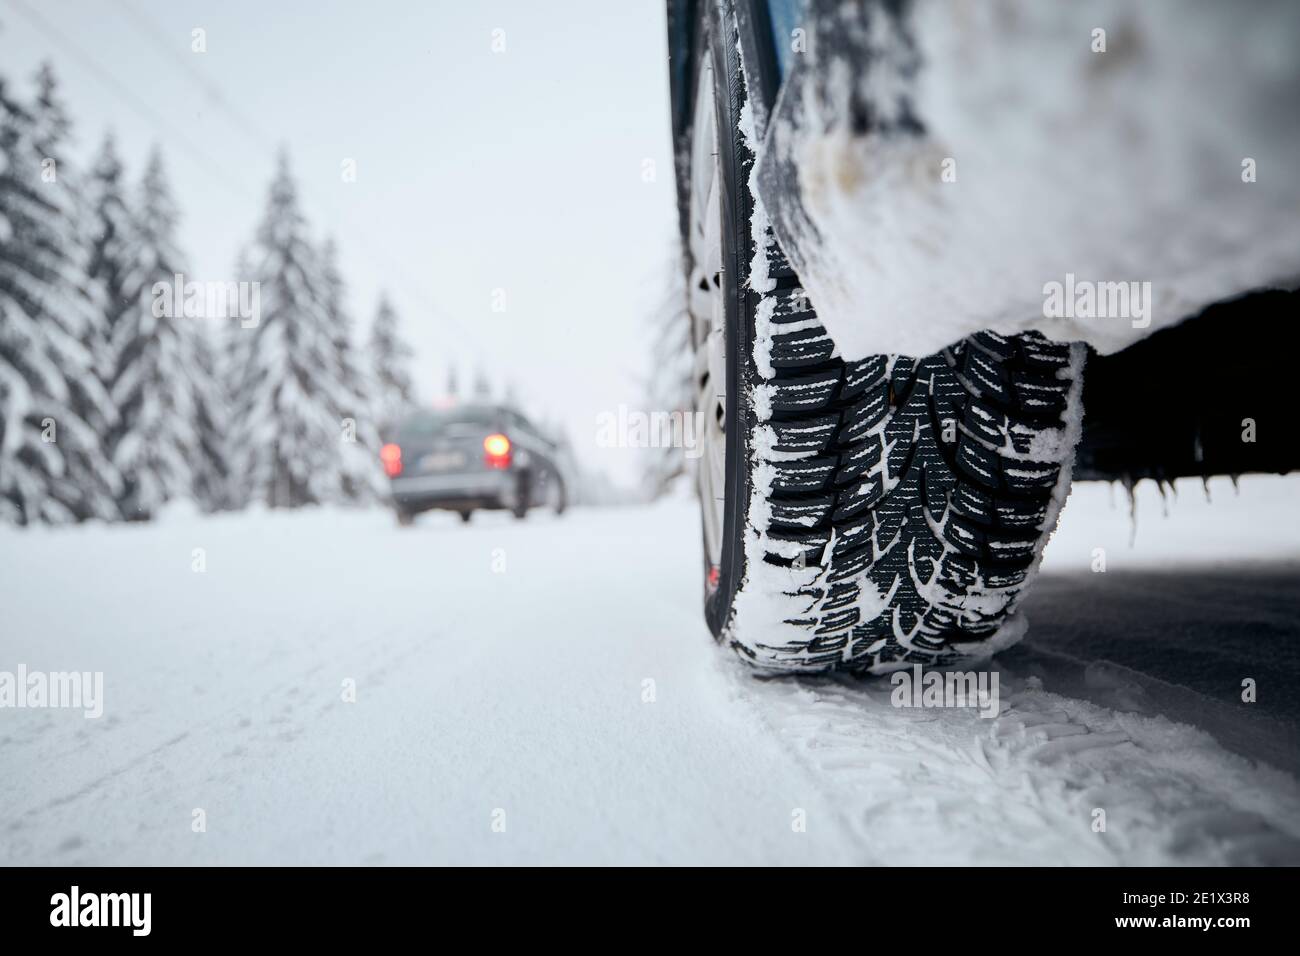 Vue rapprochée du pneu de la voiture sur route enneigée et glacée. Thèmes sécurité et conduite en hiver. Banque D'Images